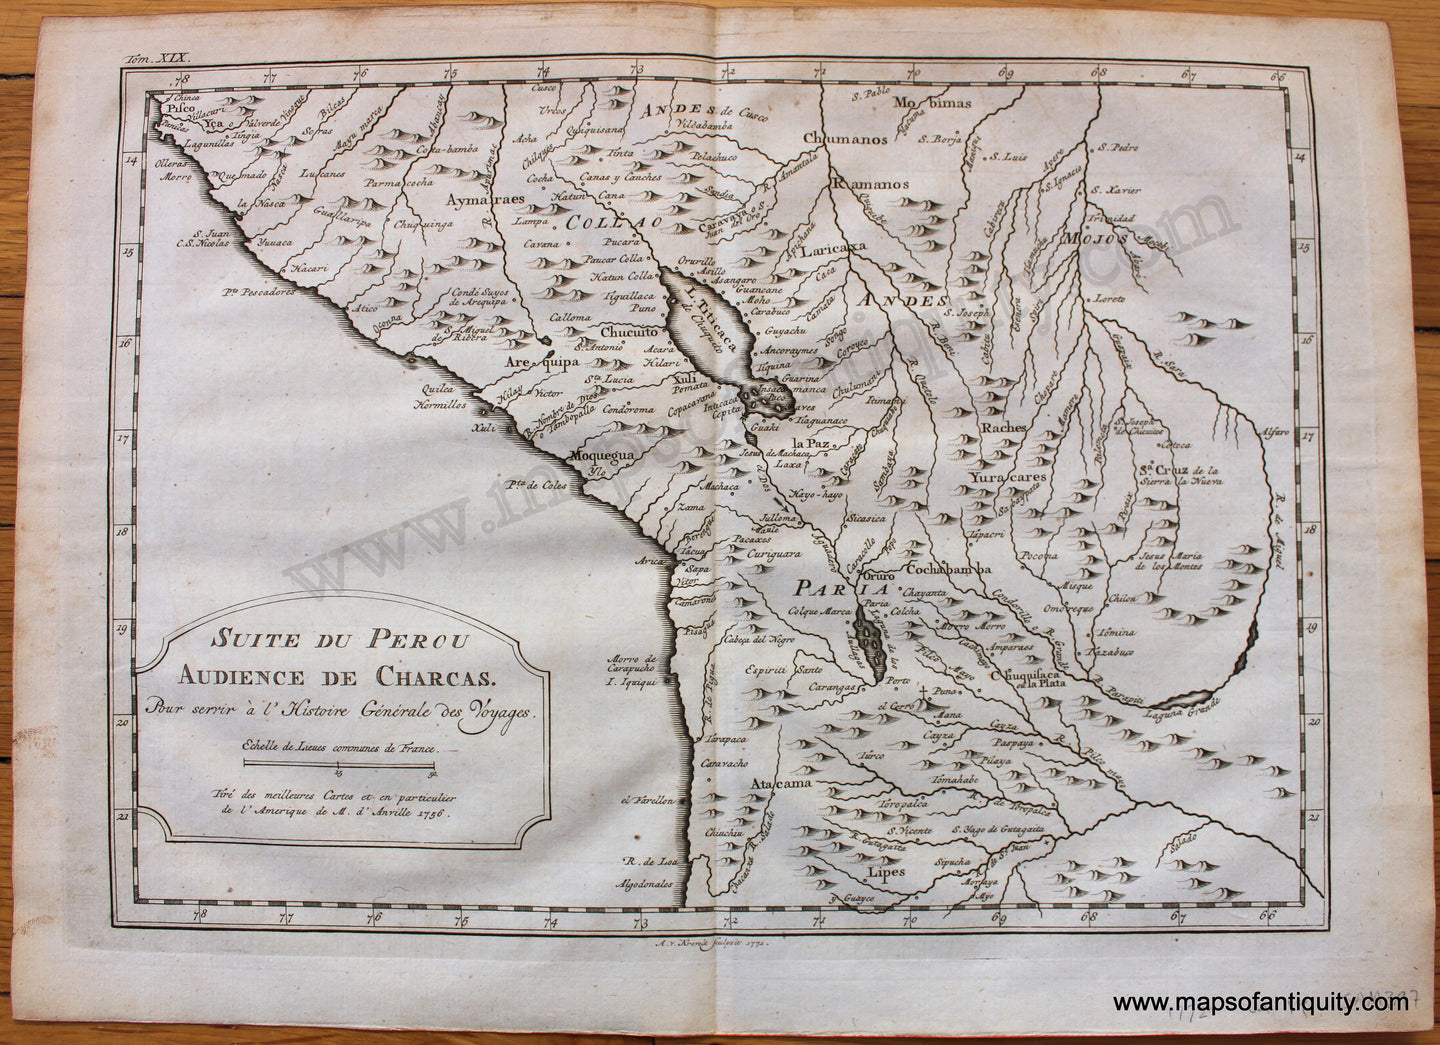 Antique-Uncolored-Map-South-America-Suite-du-Perou-Audience-de-Charcas-1772-Bellin--1800s-19th-century-Maps-of-Antiquity